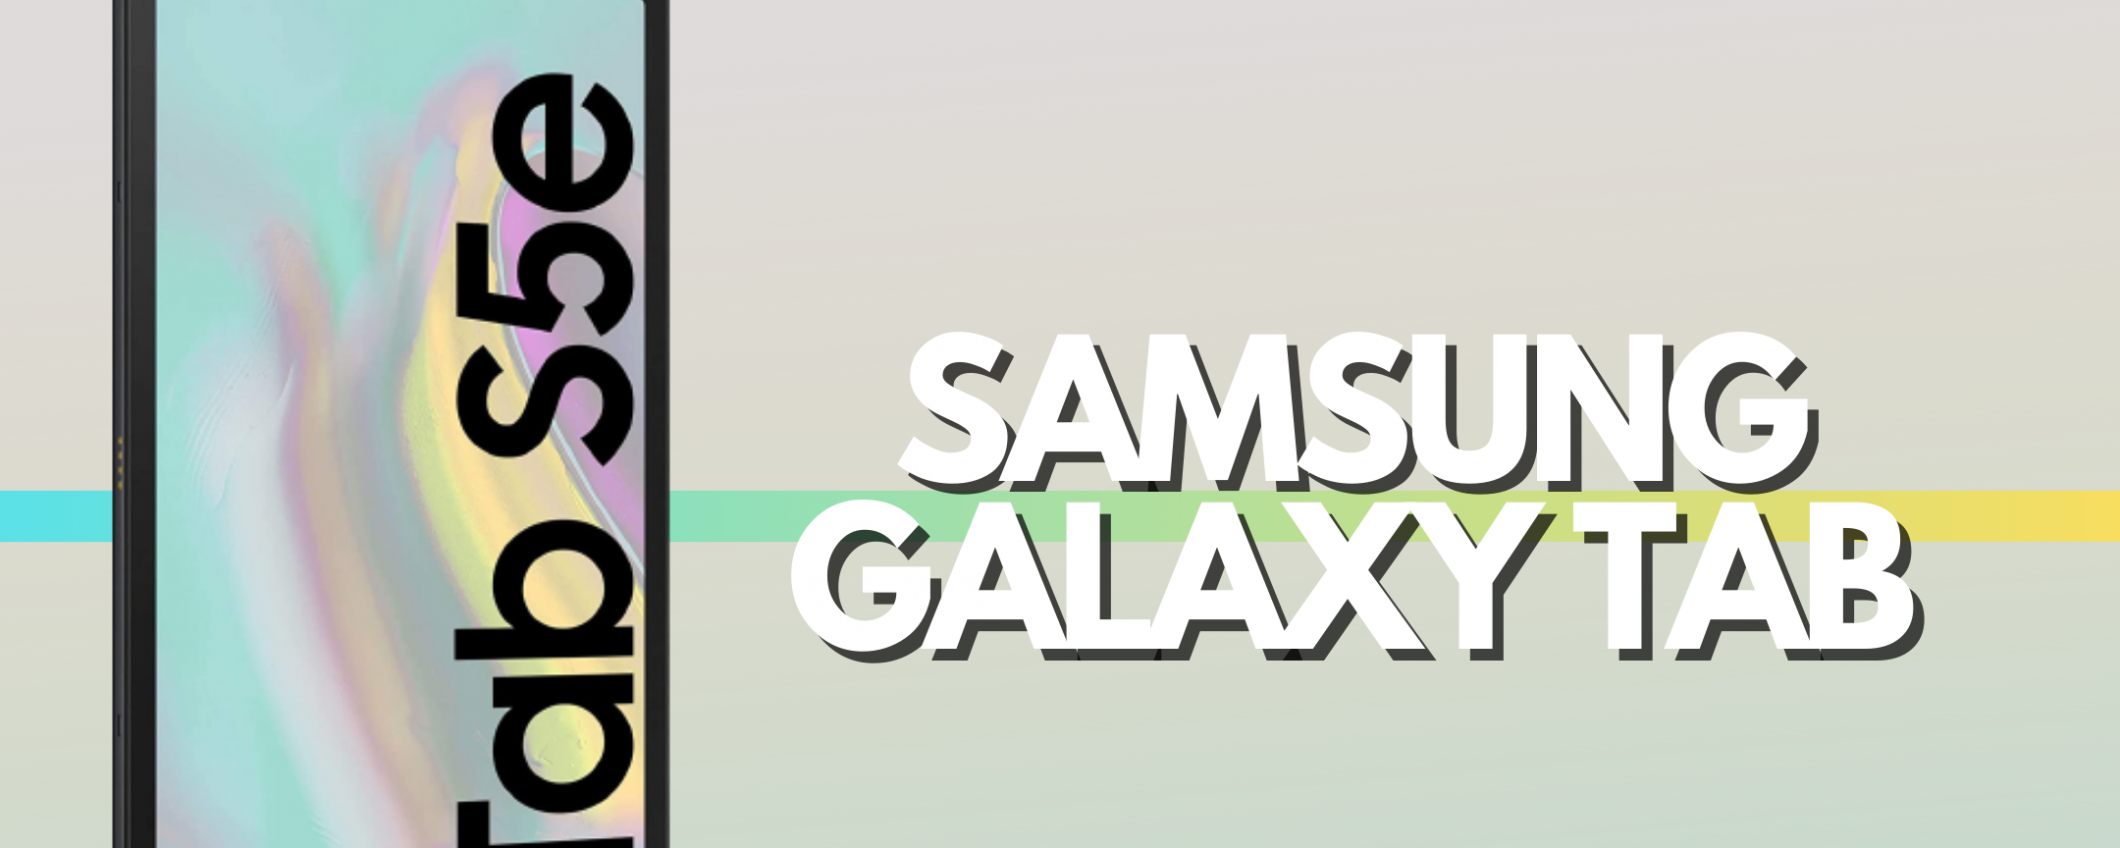 Samsung Galaxy Tab S5e è perfetto per scuola e lavoro (-90€)